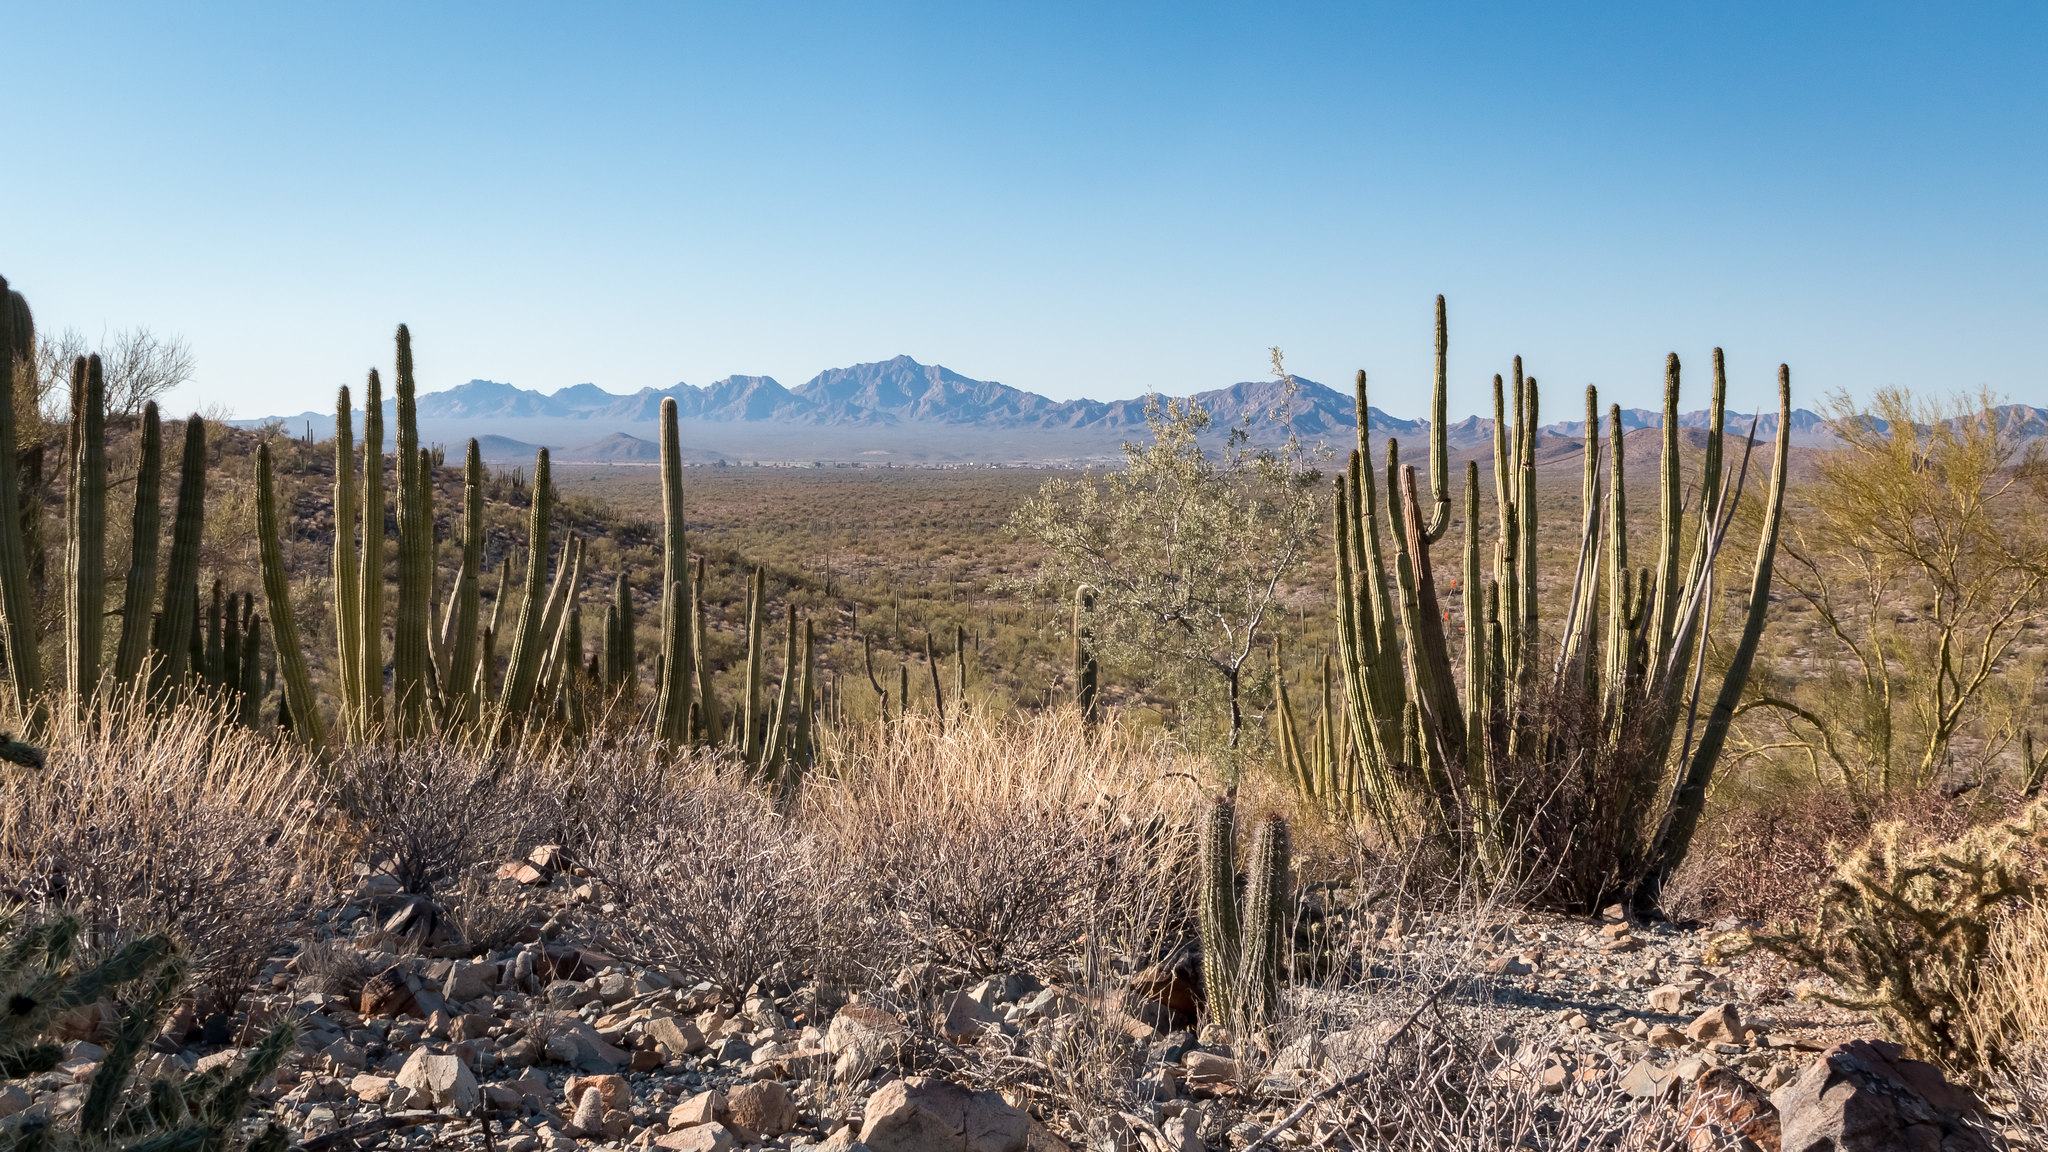 Organ Pipe Cactus NM - Arizona - [USA]